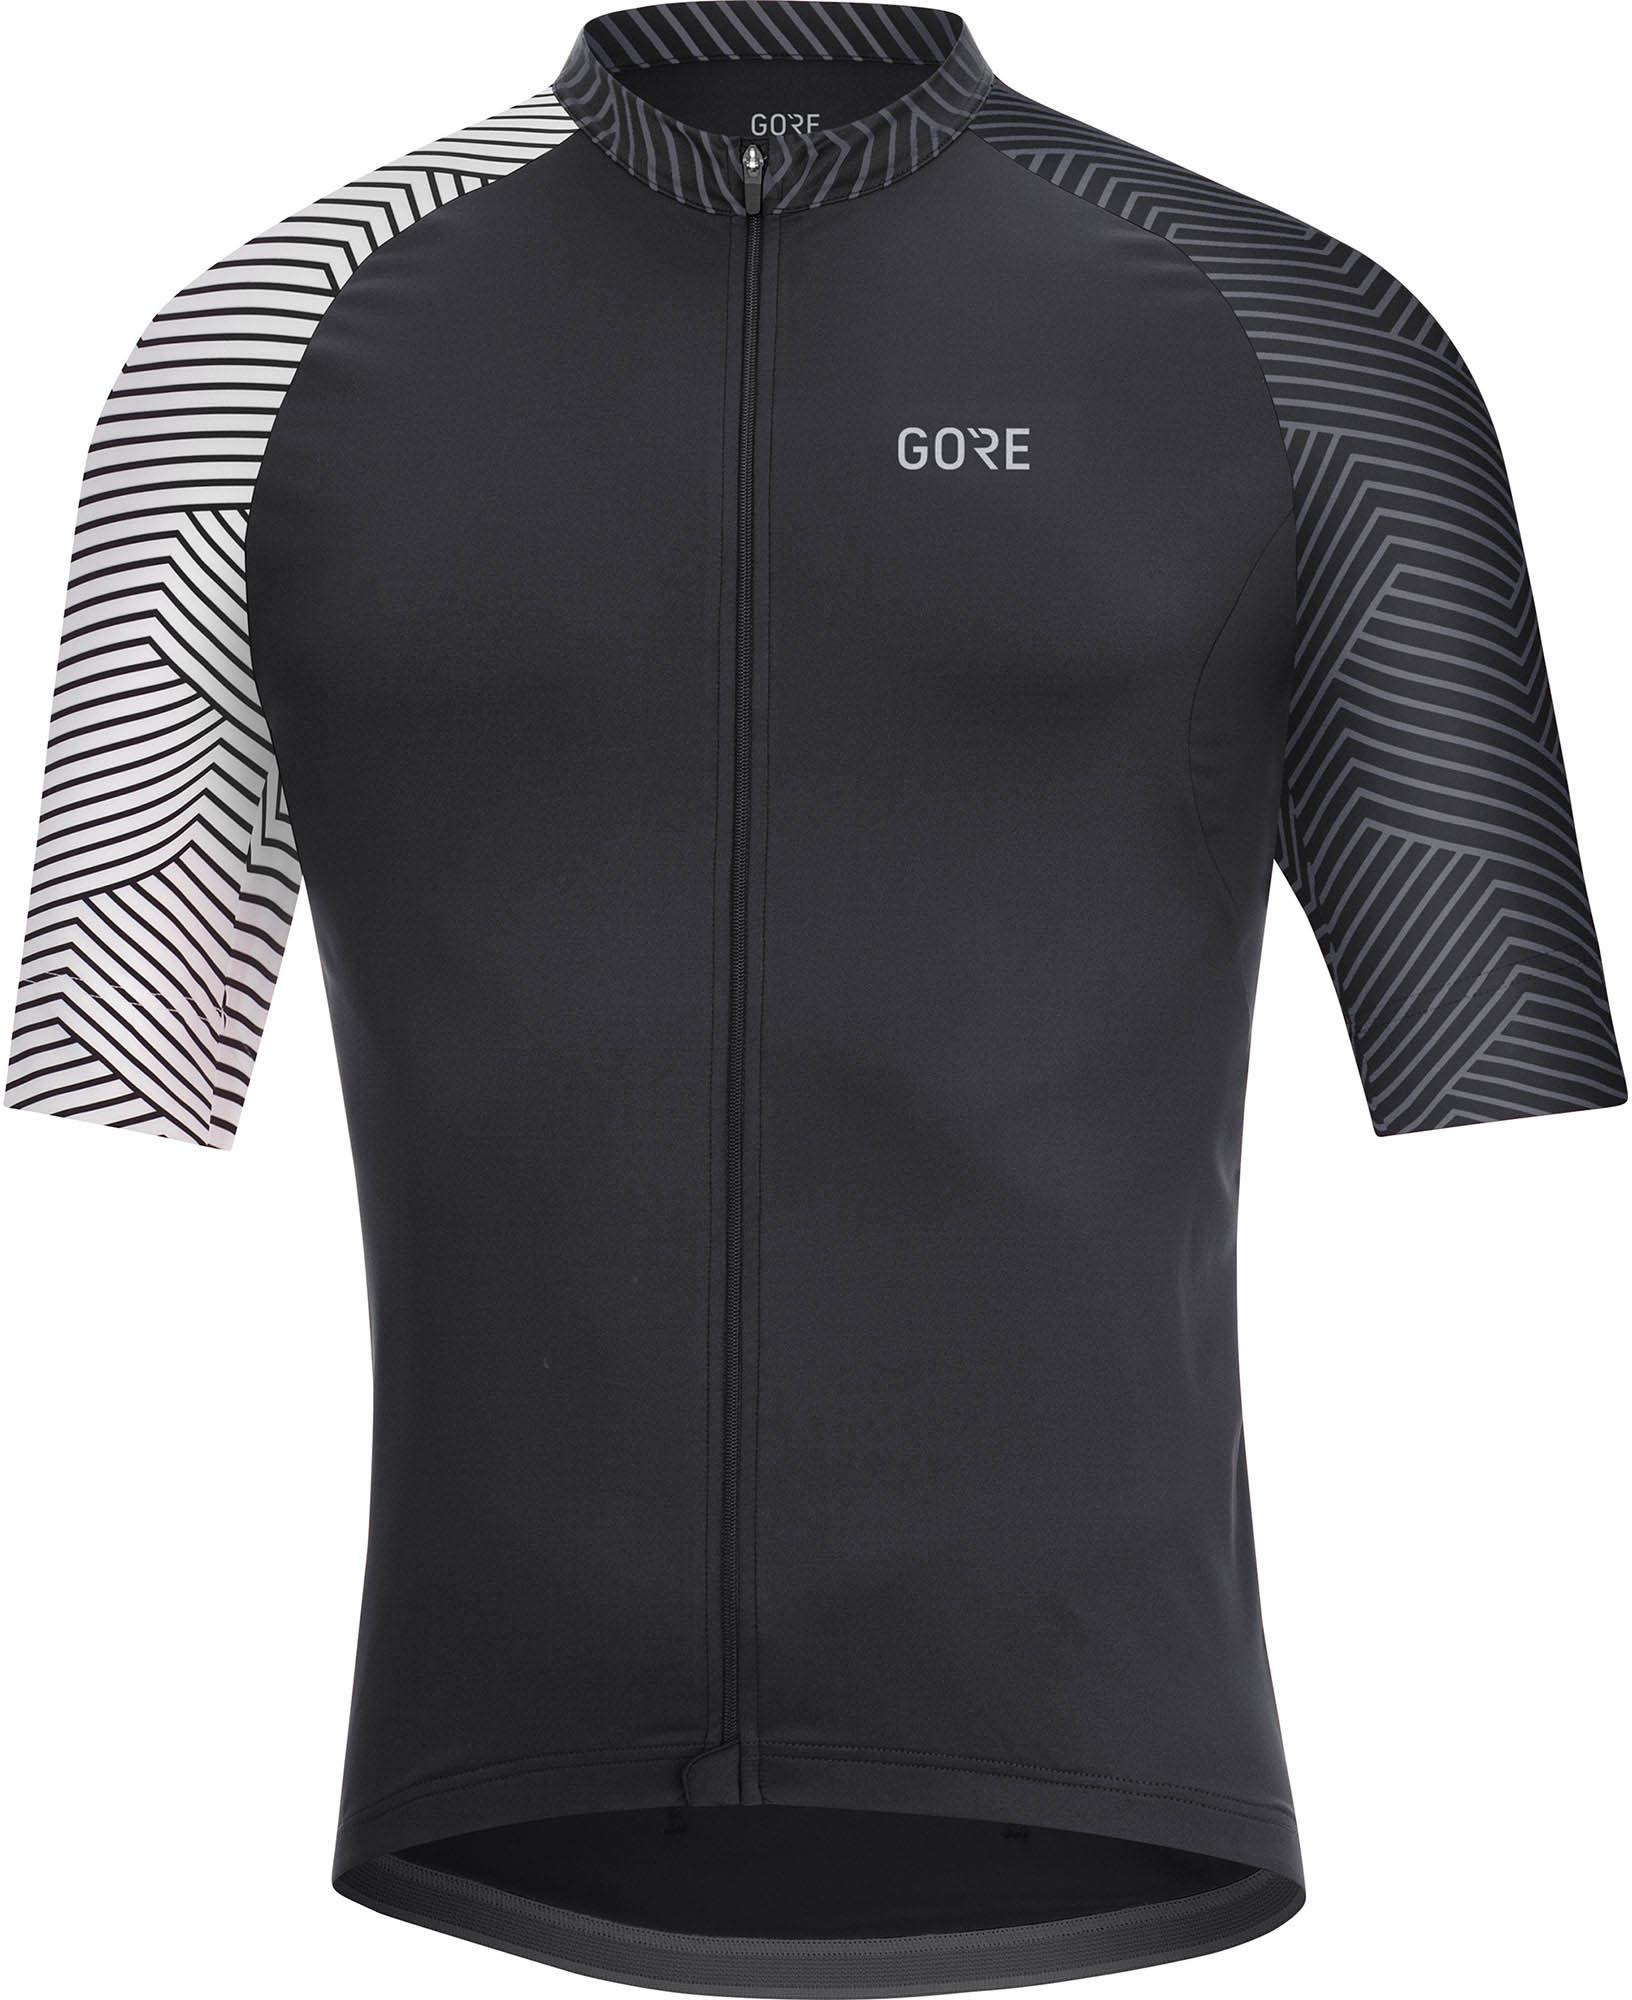 Gorewear C5 Jersey - Black/white